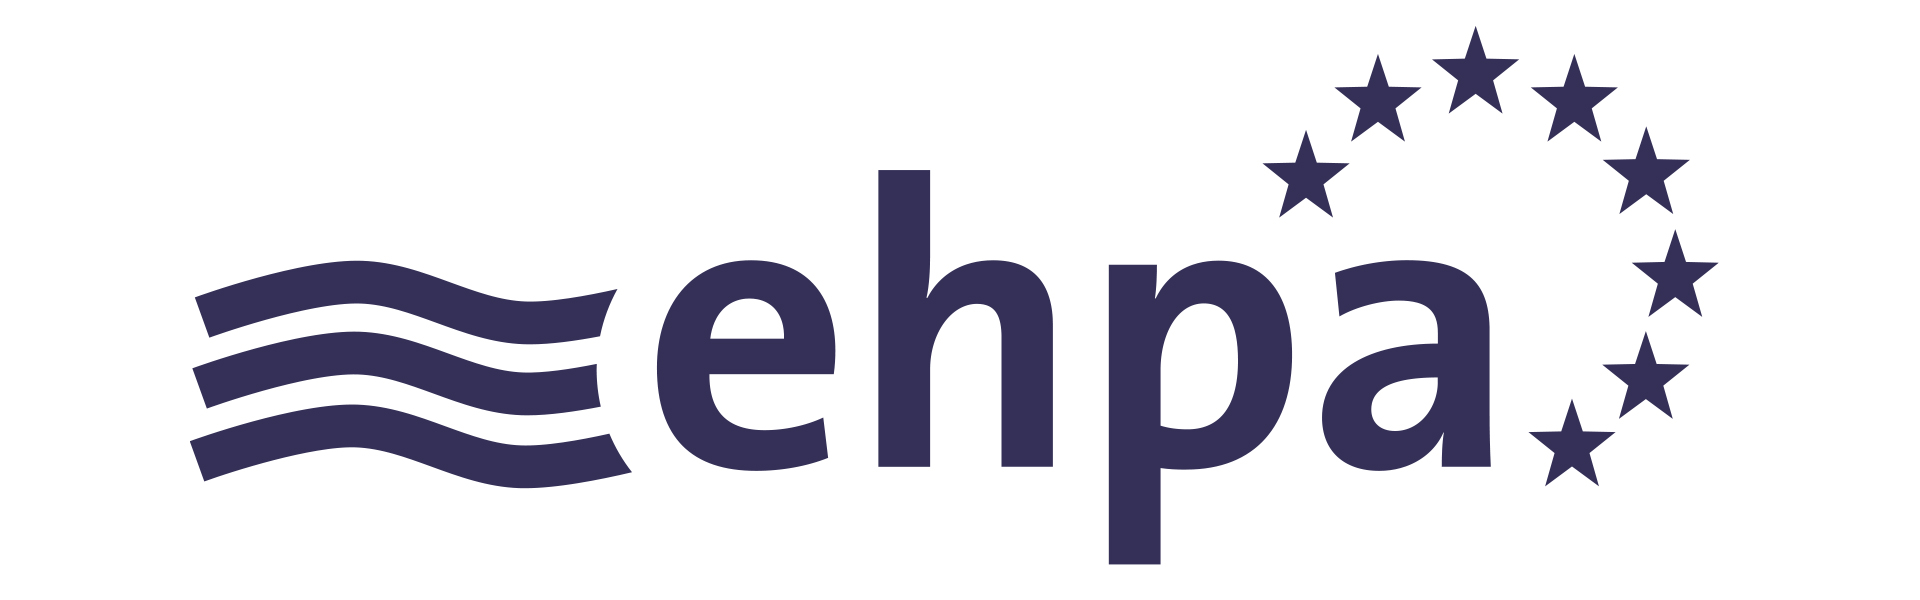 EHPA_logo_blue.jpg